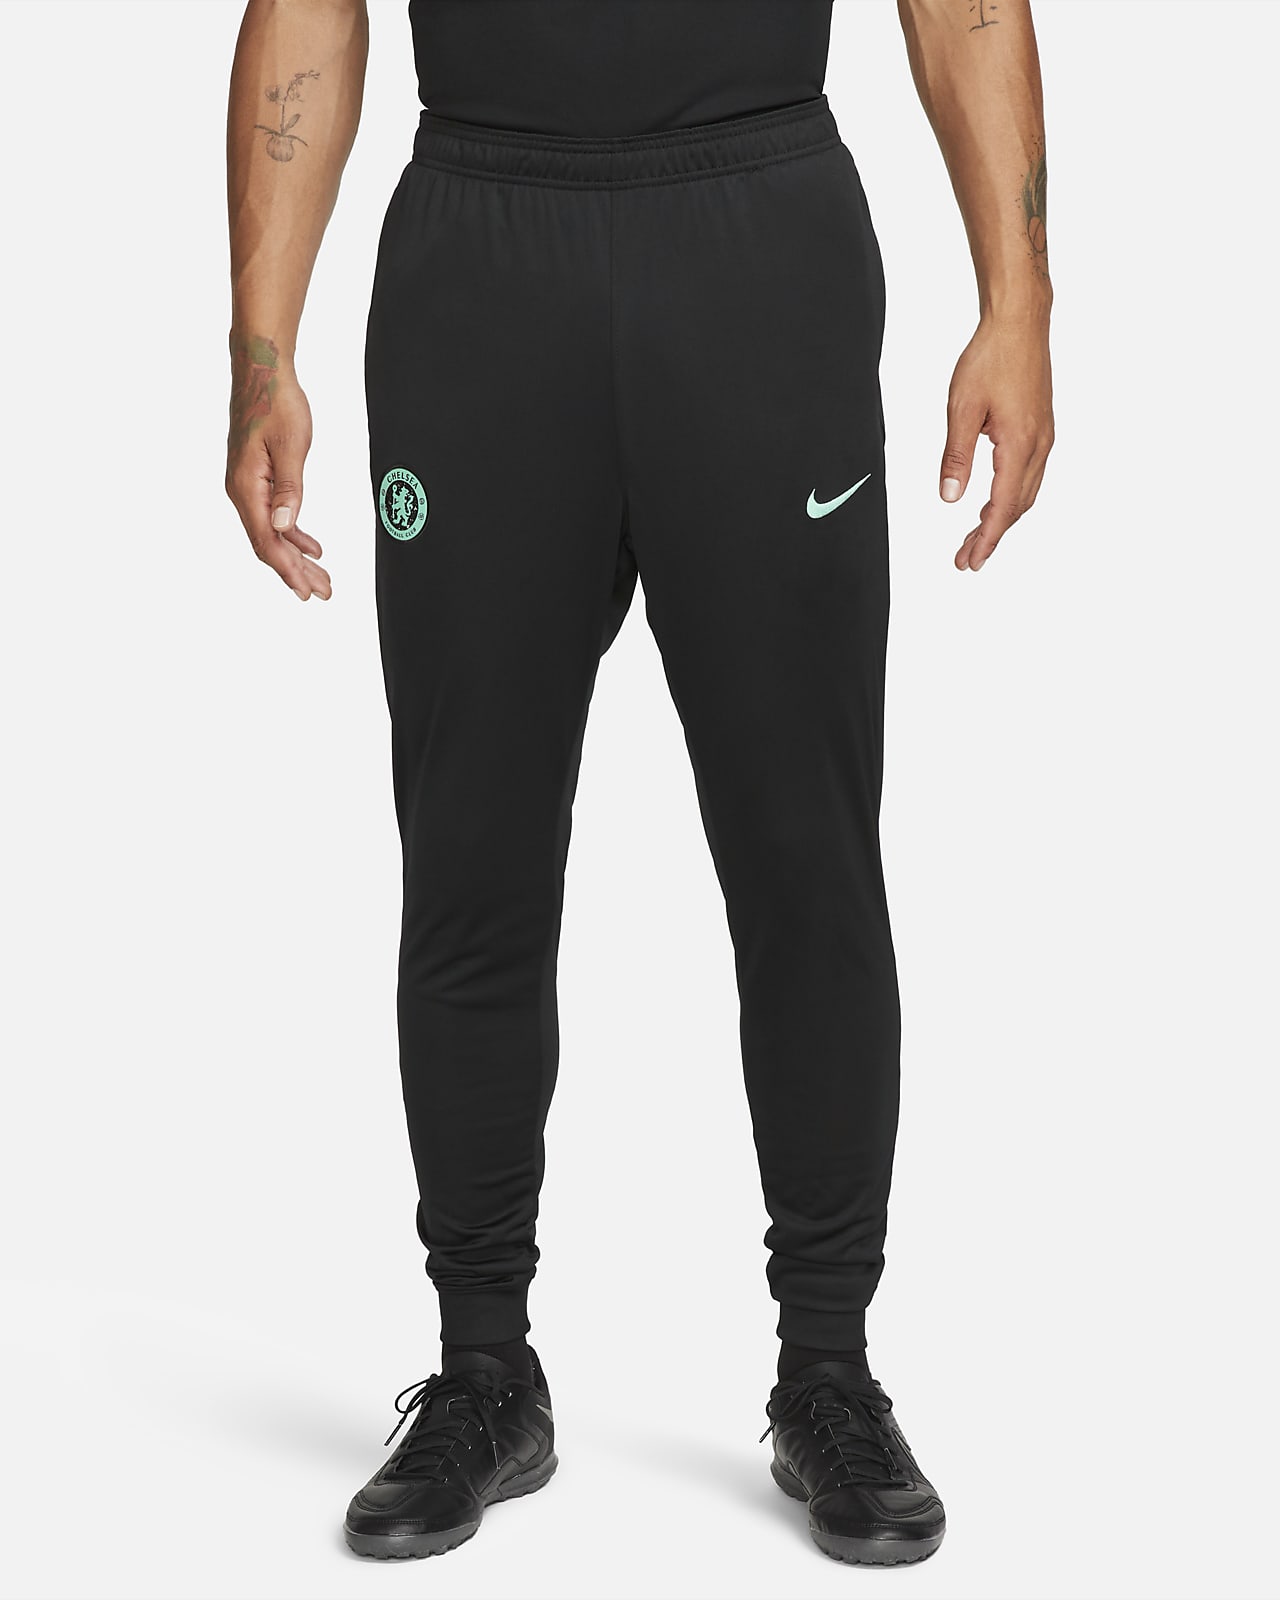 Ανδρικό ποδοσφαιρικό παντελόνι φόρμας Nike Dri-FIT εναλλακτικής εμφάνισης Τσέλσι Strike